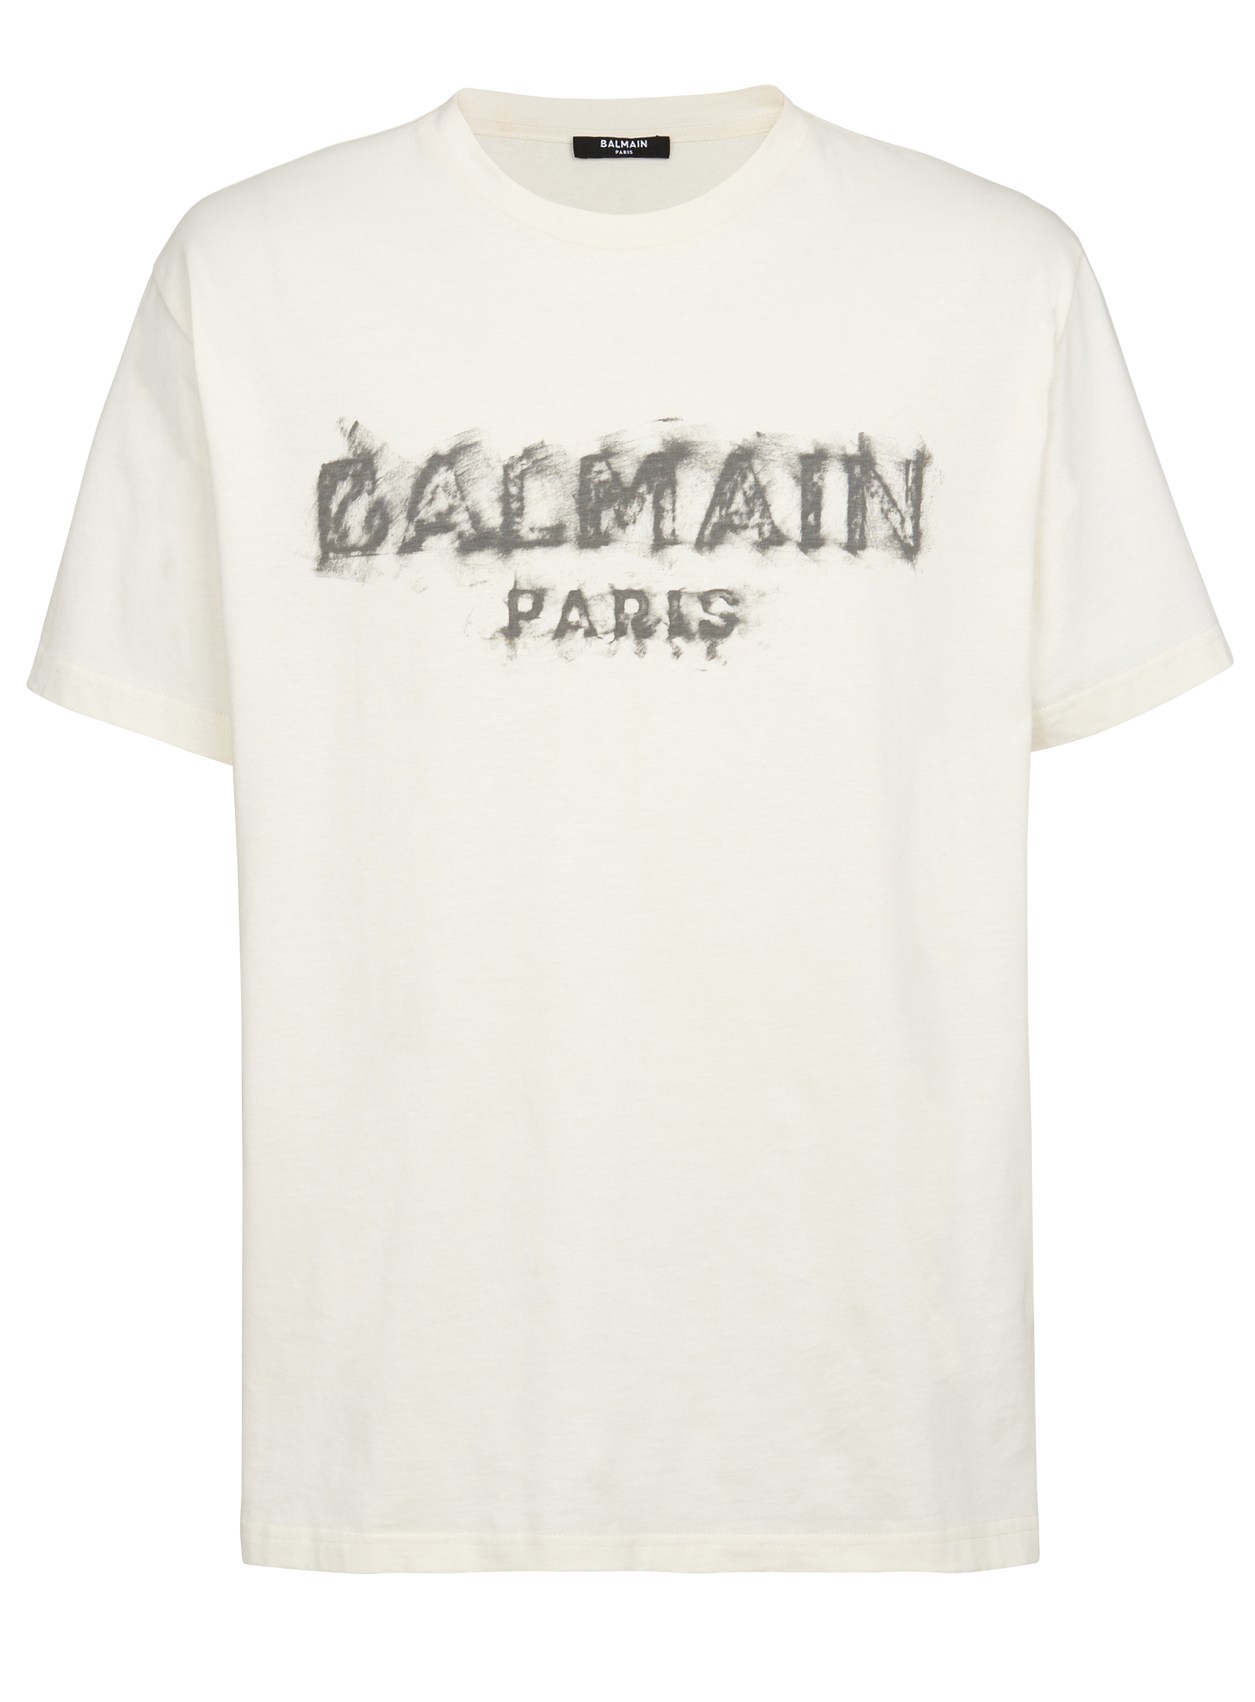 BALMAIN CHARCOAL T-SHIRT FIT) - BEIGE - PureAtlanta.com